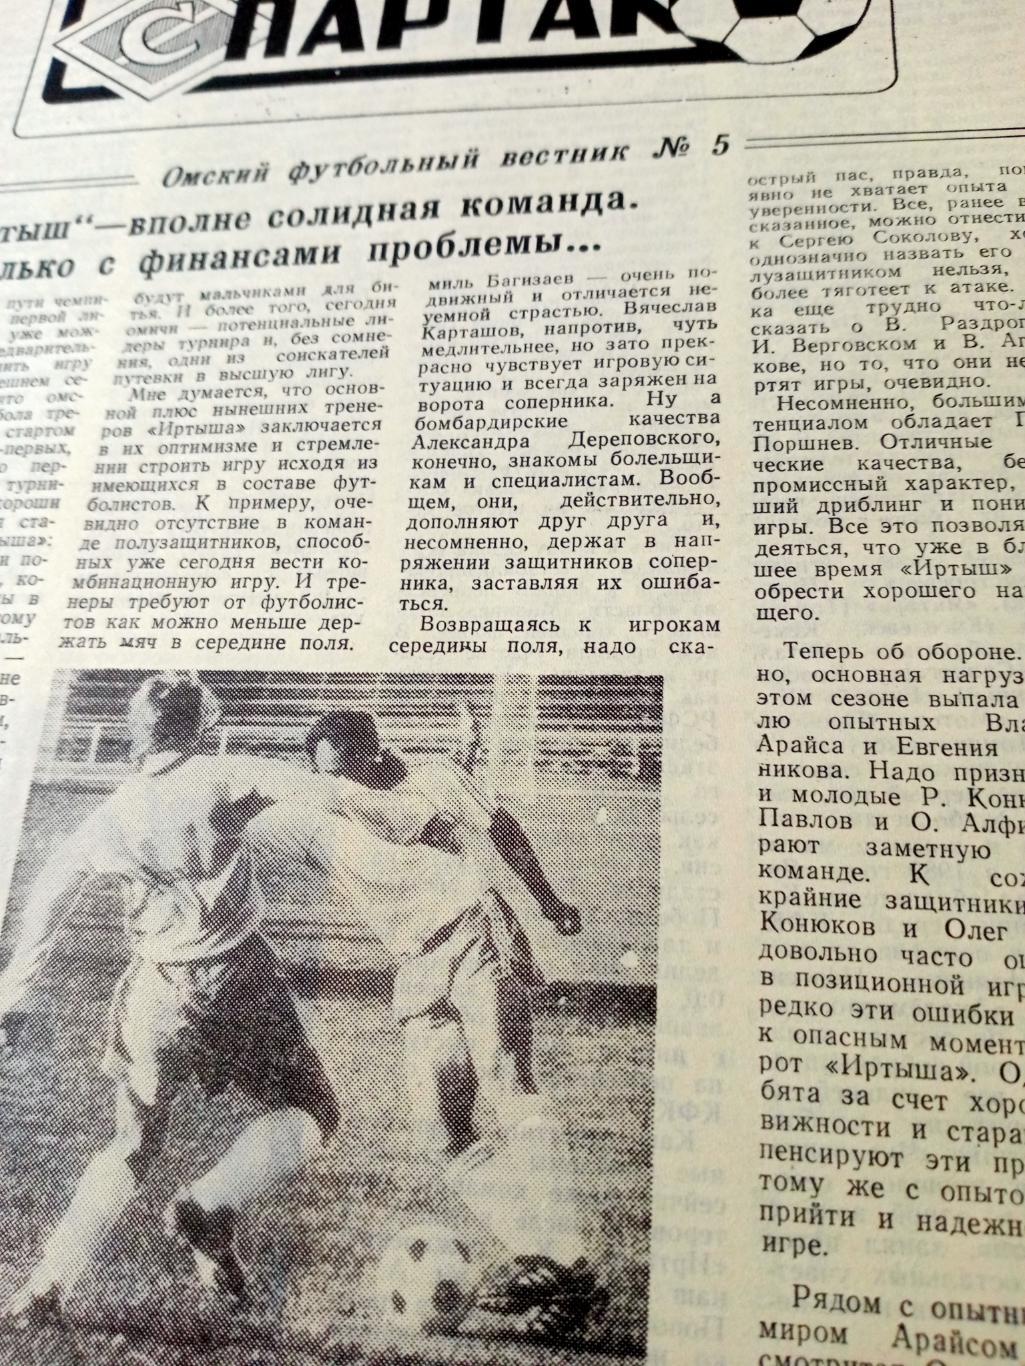 Спартак. Омский футбольный вестник. №5. 1992 год